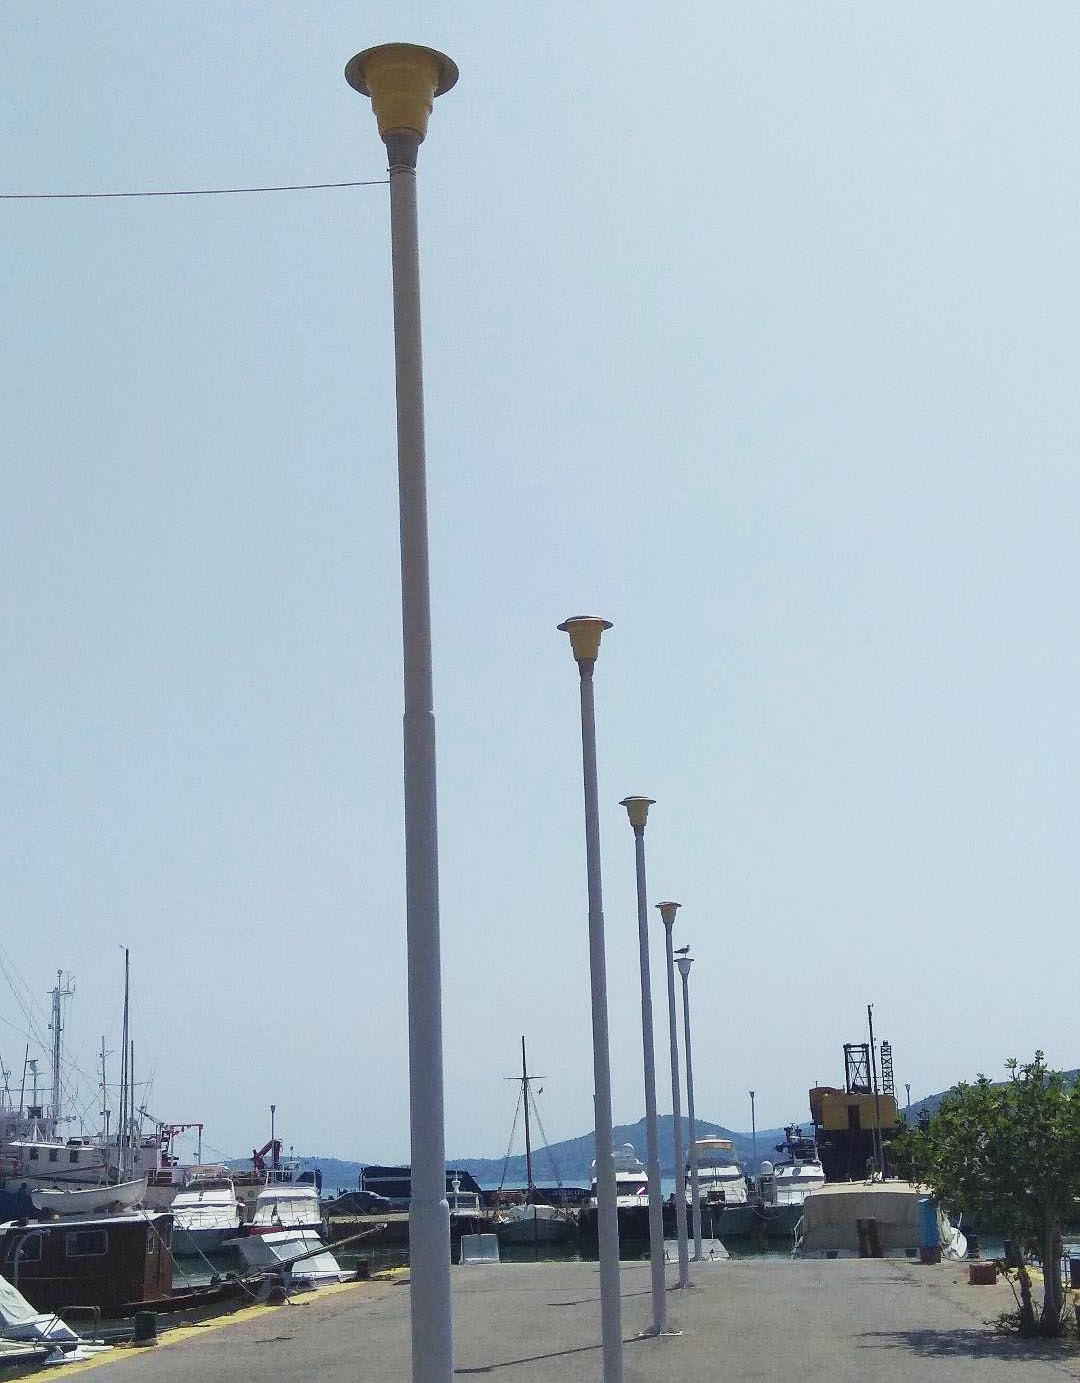 Λιμάνι Νέας Περάμου, Απρίλιος 2019, ΟΛΕ, αντικατάσταση λαμπών κλπ